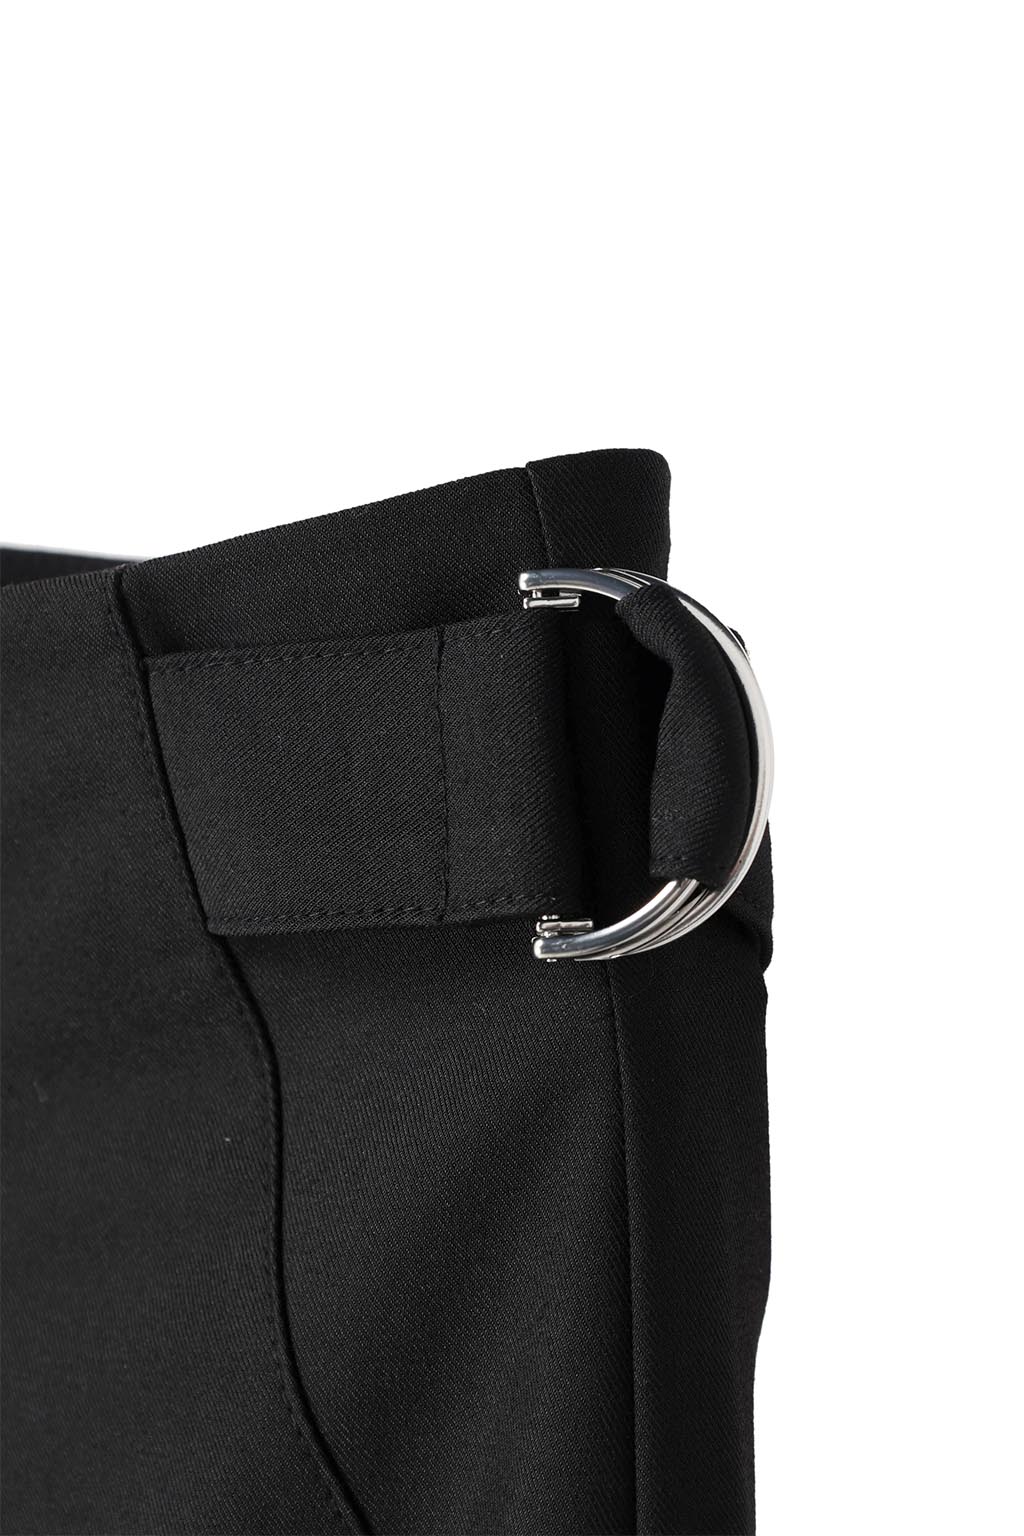 Waist Belted Color Pants Black 10